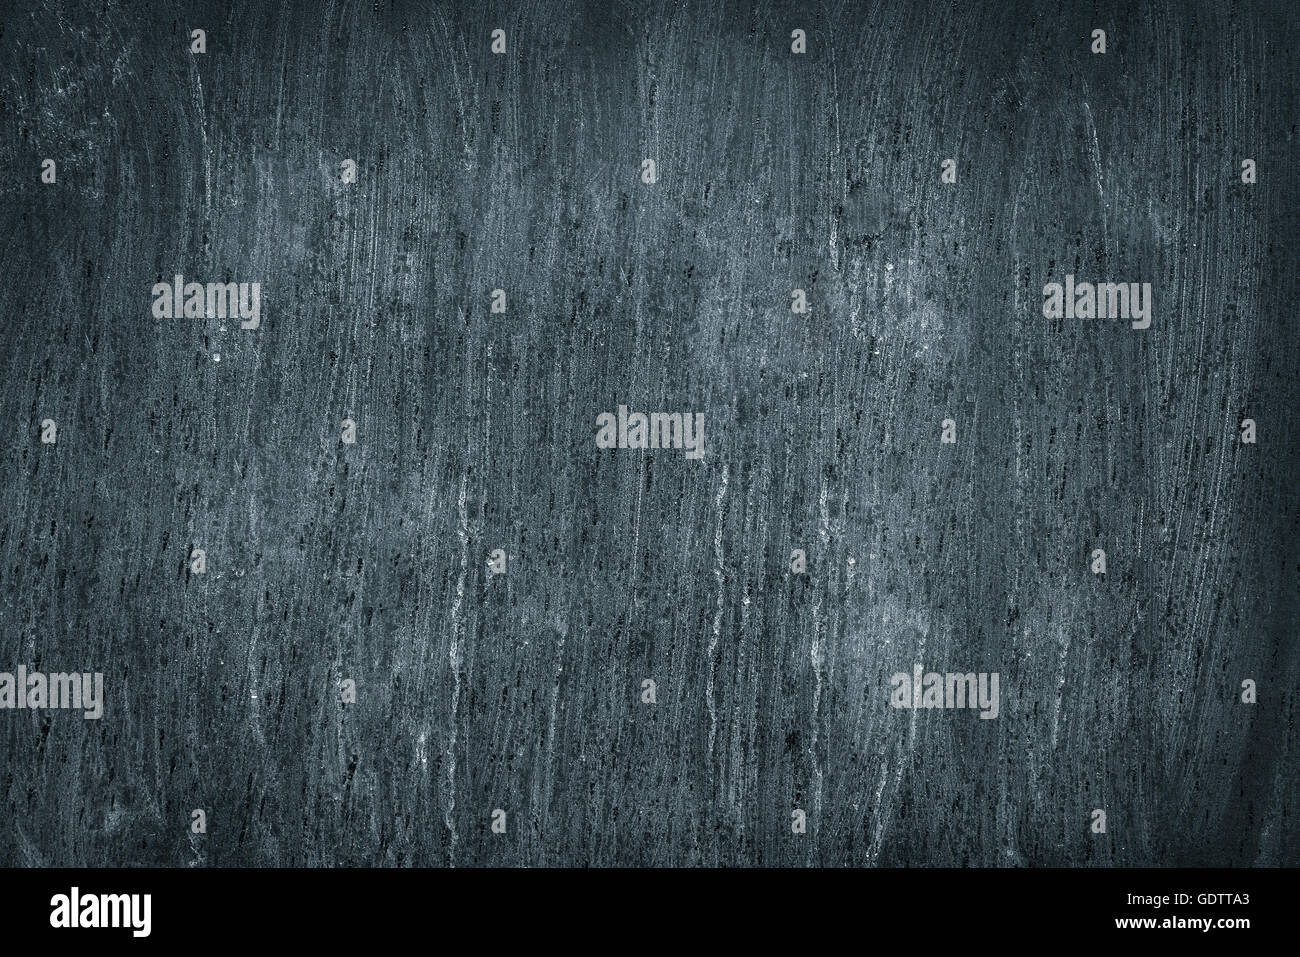 Blackboard. Tafel Textur. Leer leere schwarze Tafel mit Kreide Spuren  Stockfotografie - Alamy